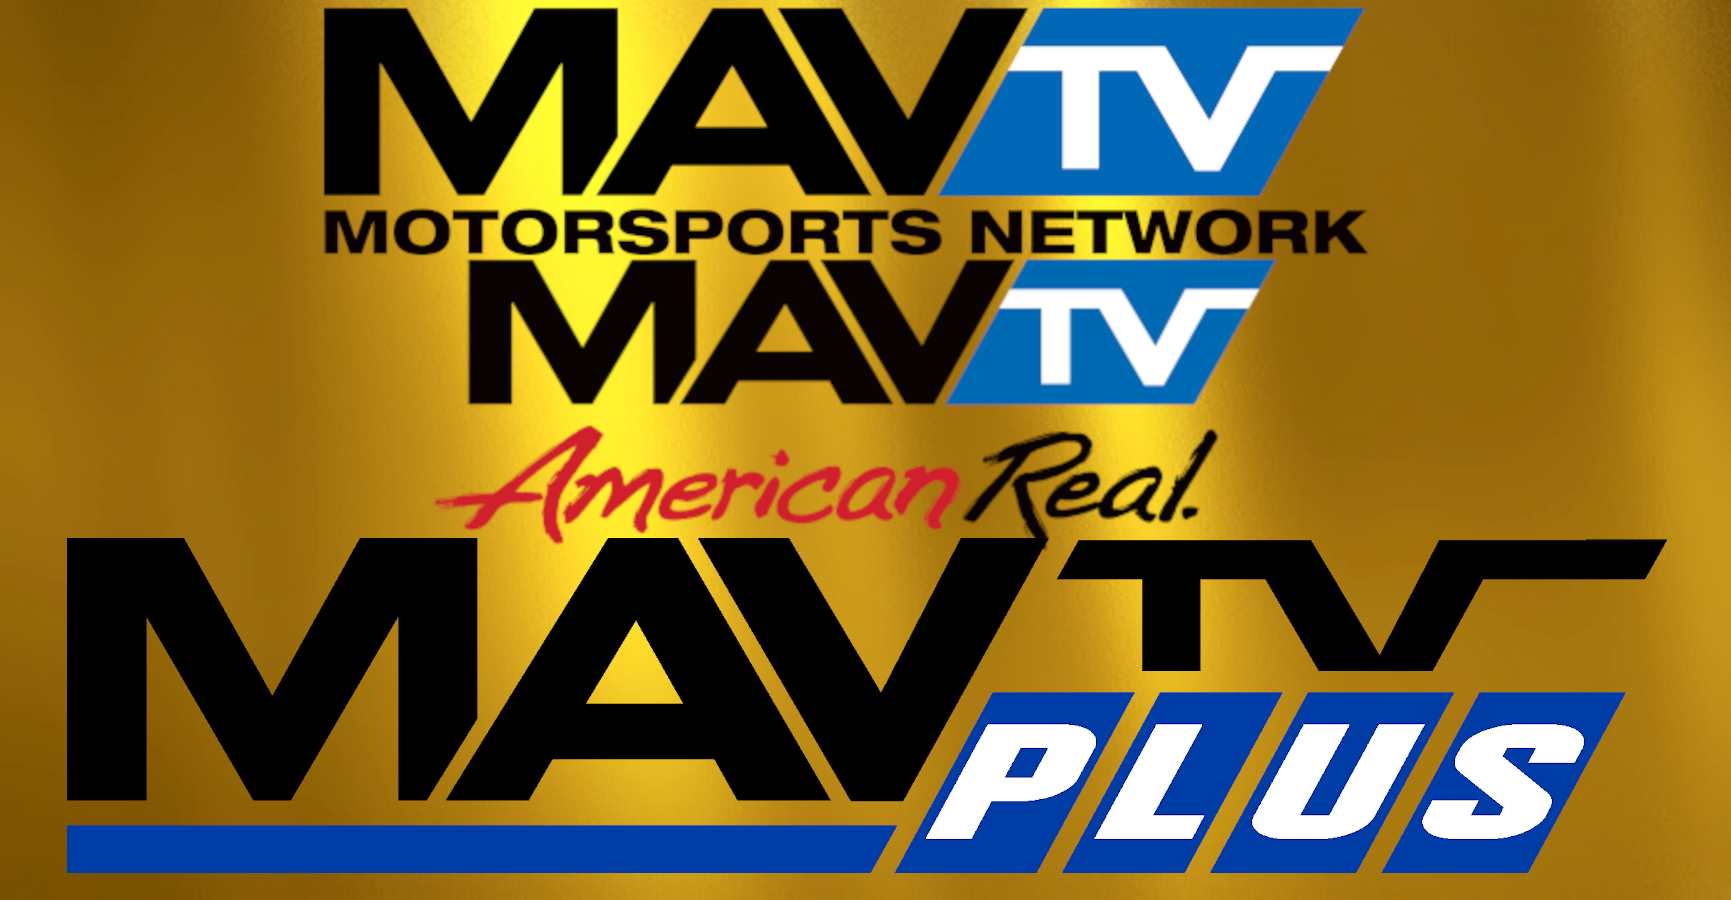 MAV TV Logos.jpg